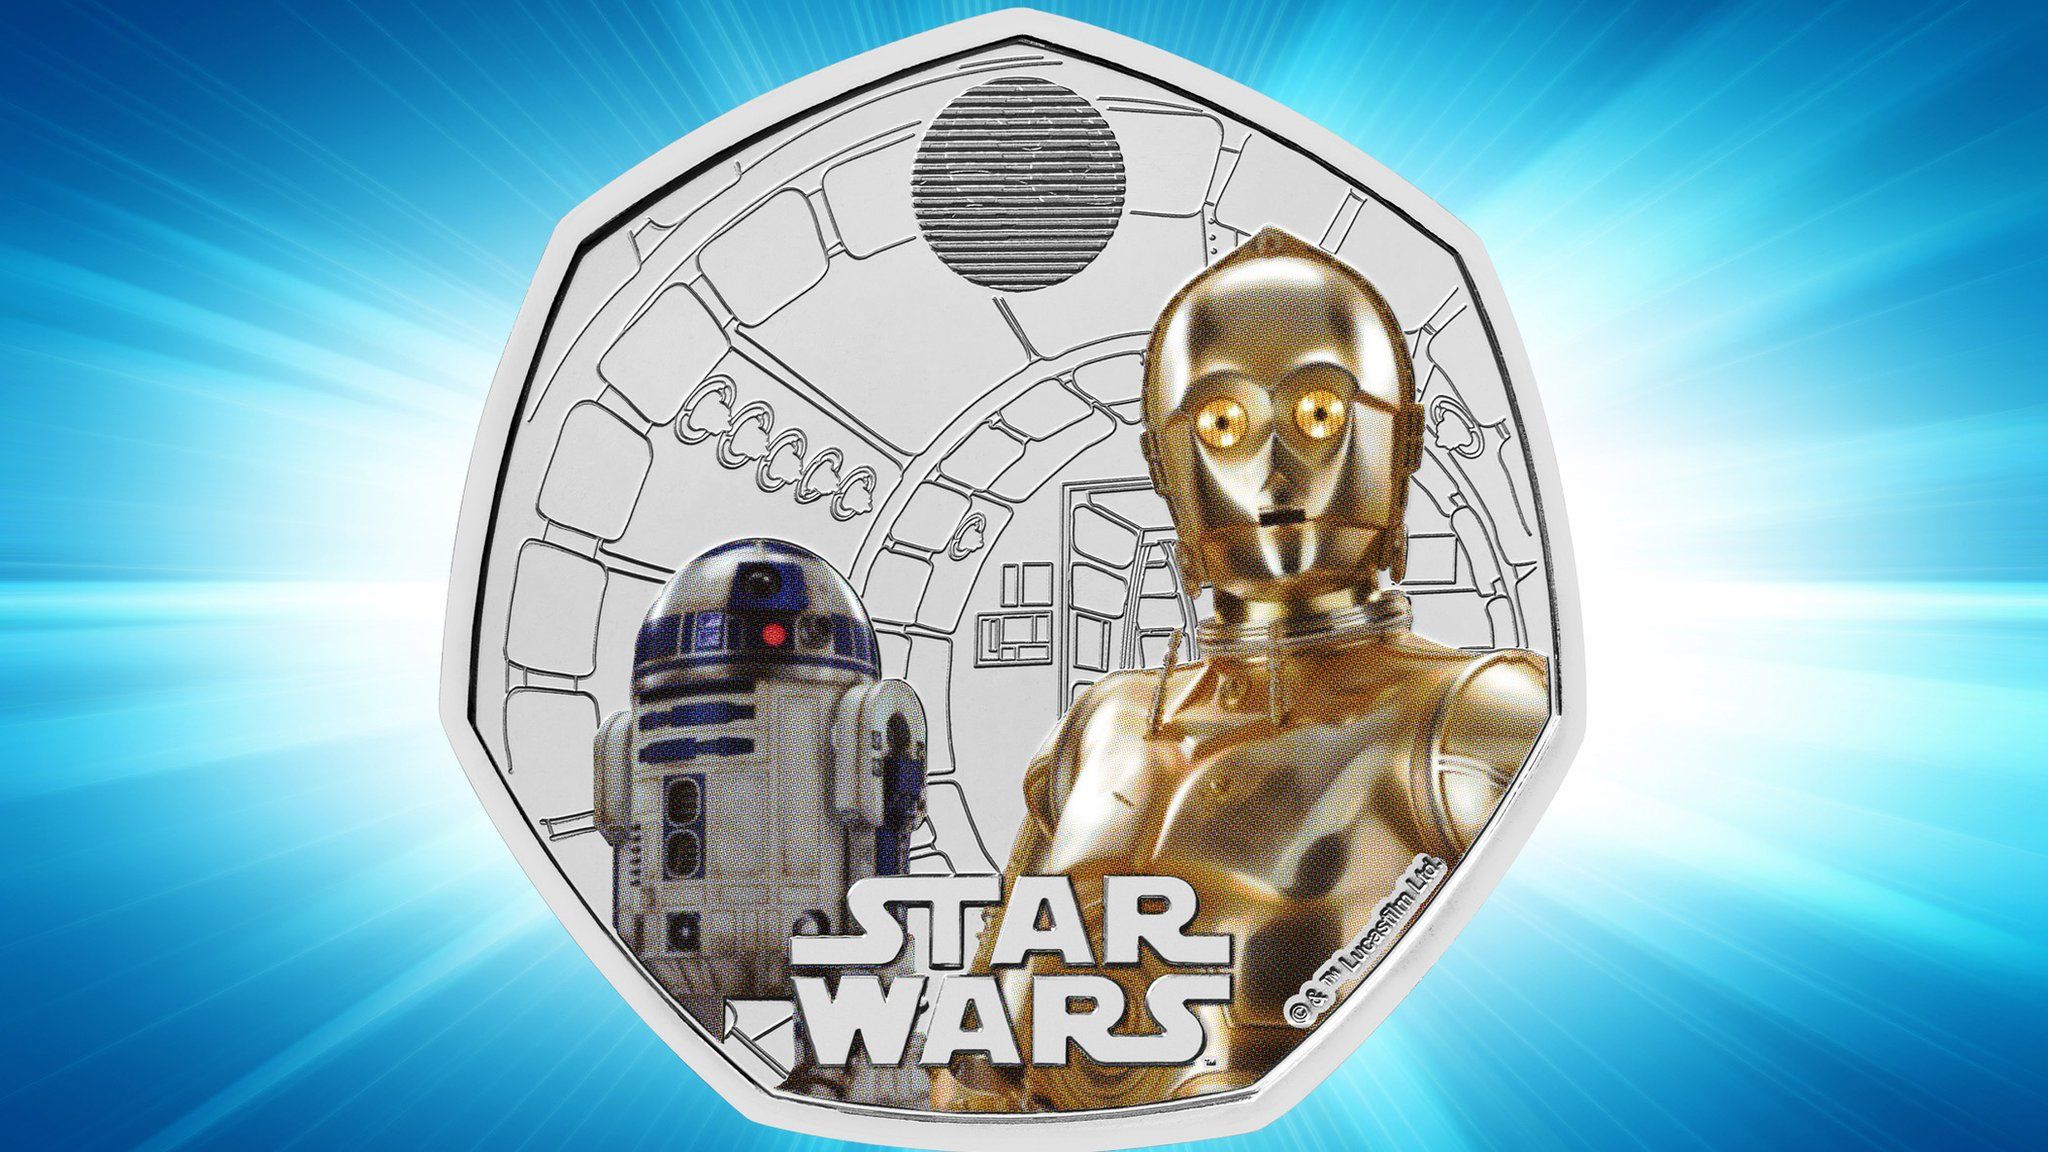 Star Wars coin